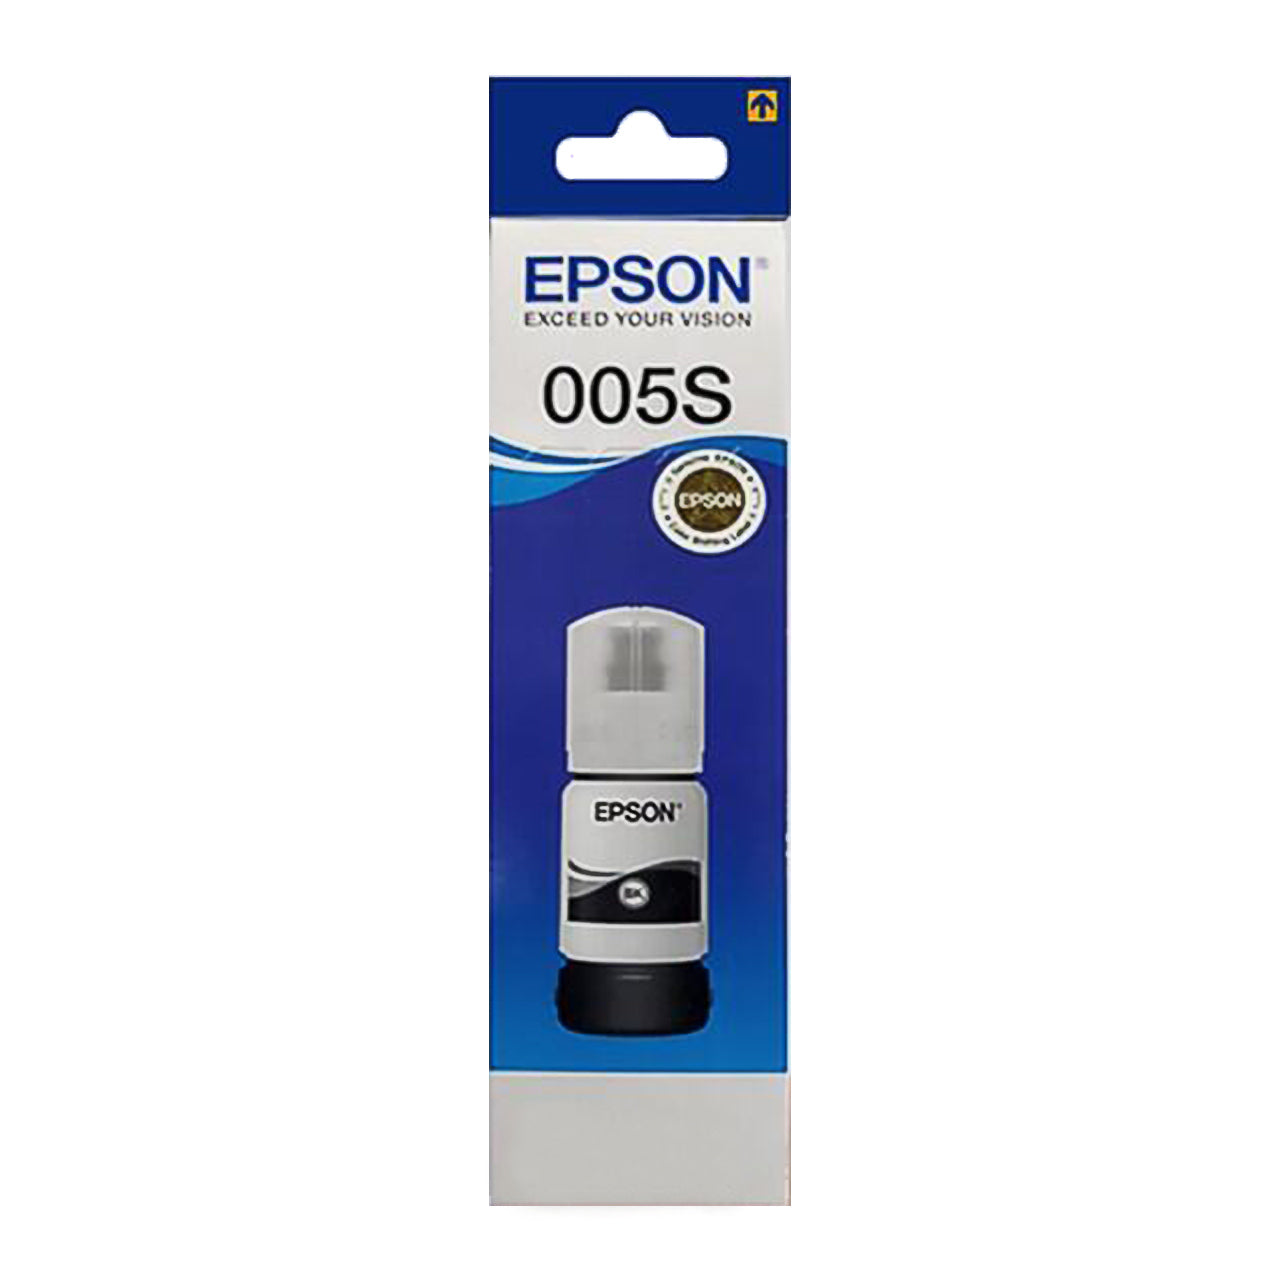 Epson 005S Ink Refill Bottle (40mL) Black for Printer EcoTank M1140 / M1120 / M2140 / M1100 / M3170